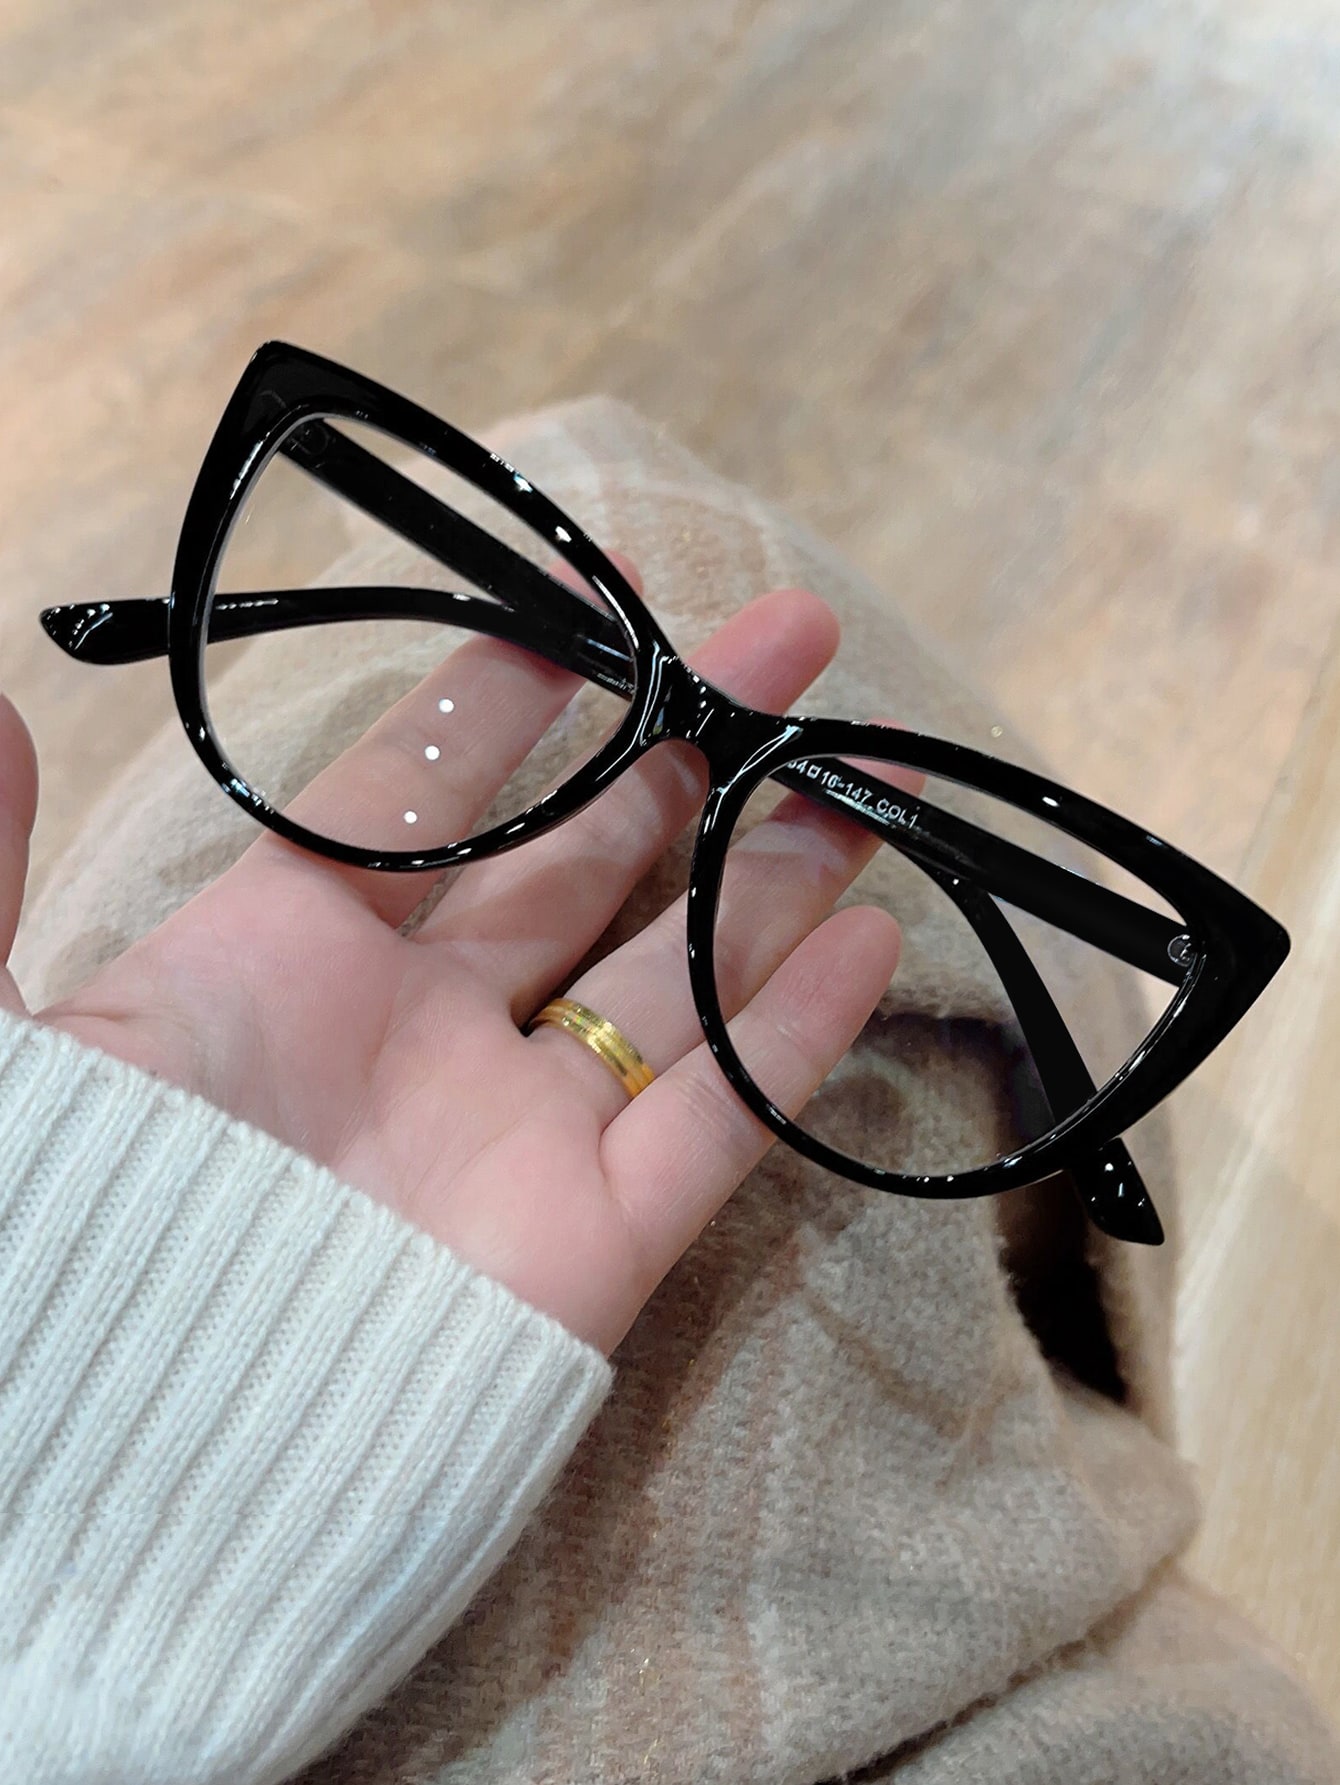 Стильные очки «кошачий глаз» — идеально подходят для чтения